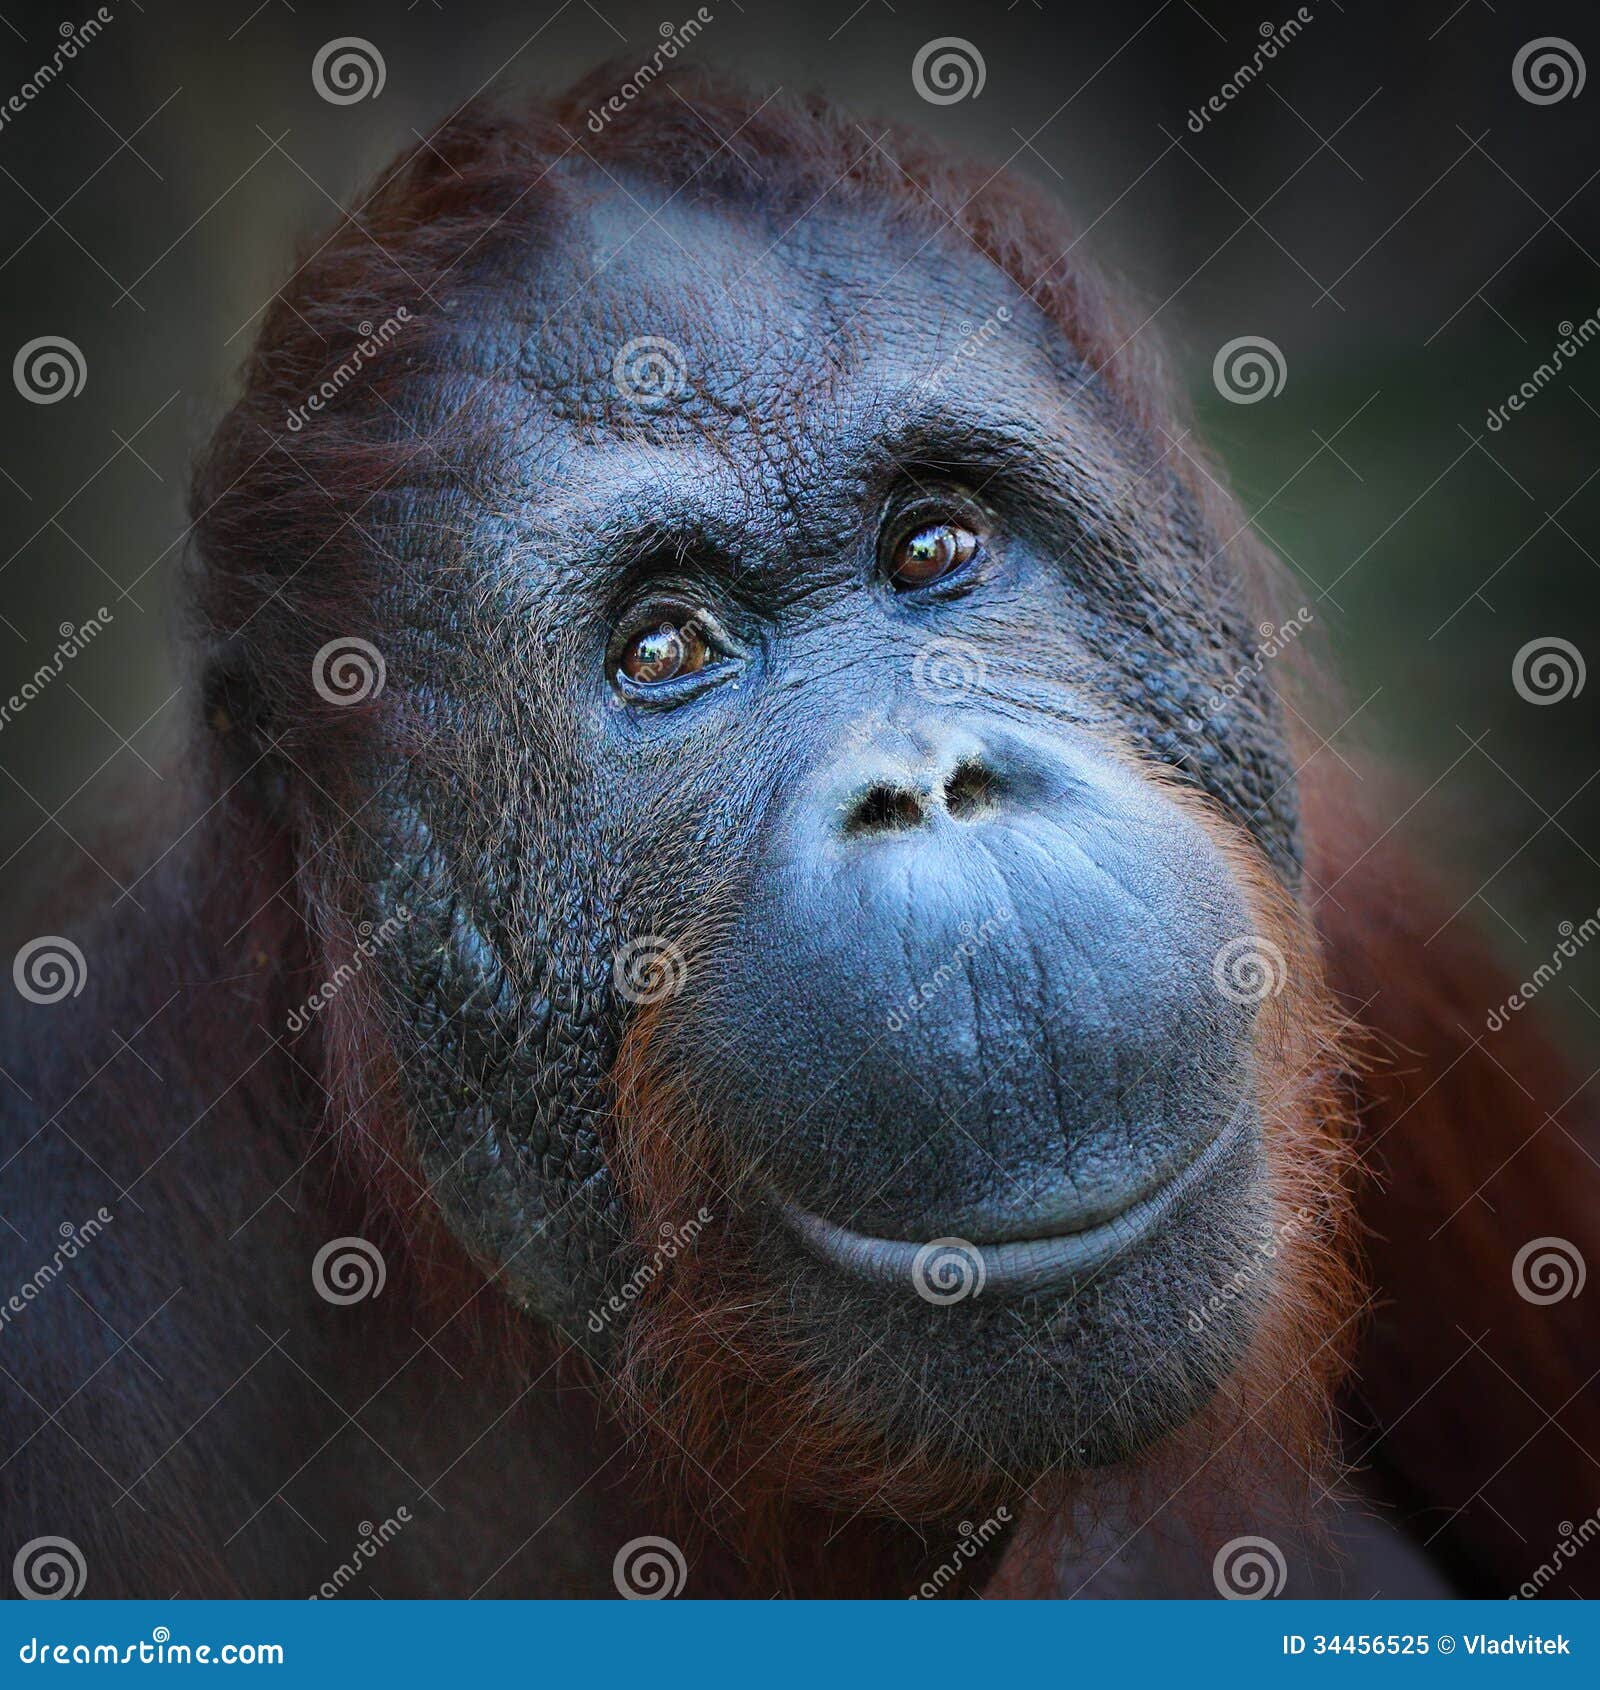 the bornean orangutan (pongo pygmaeus).